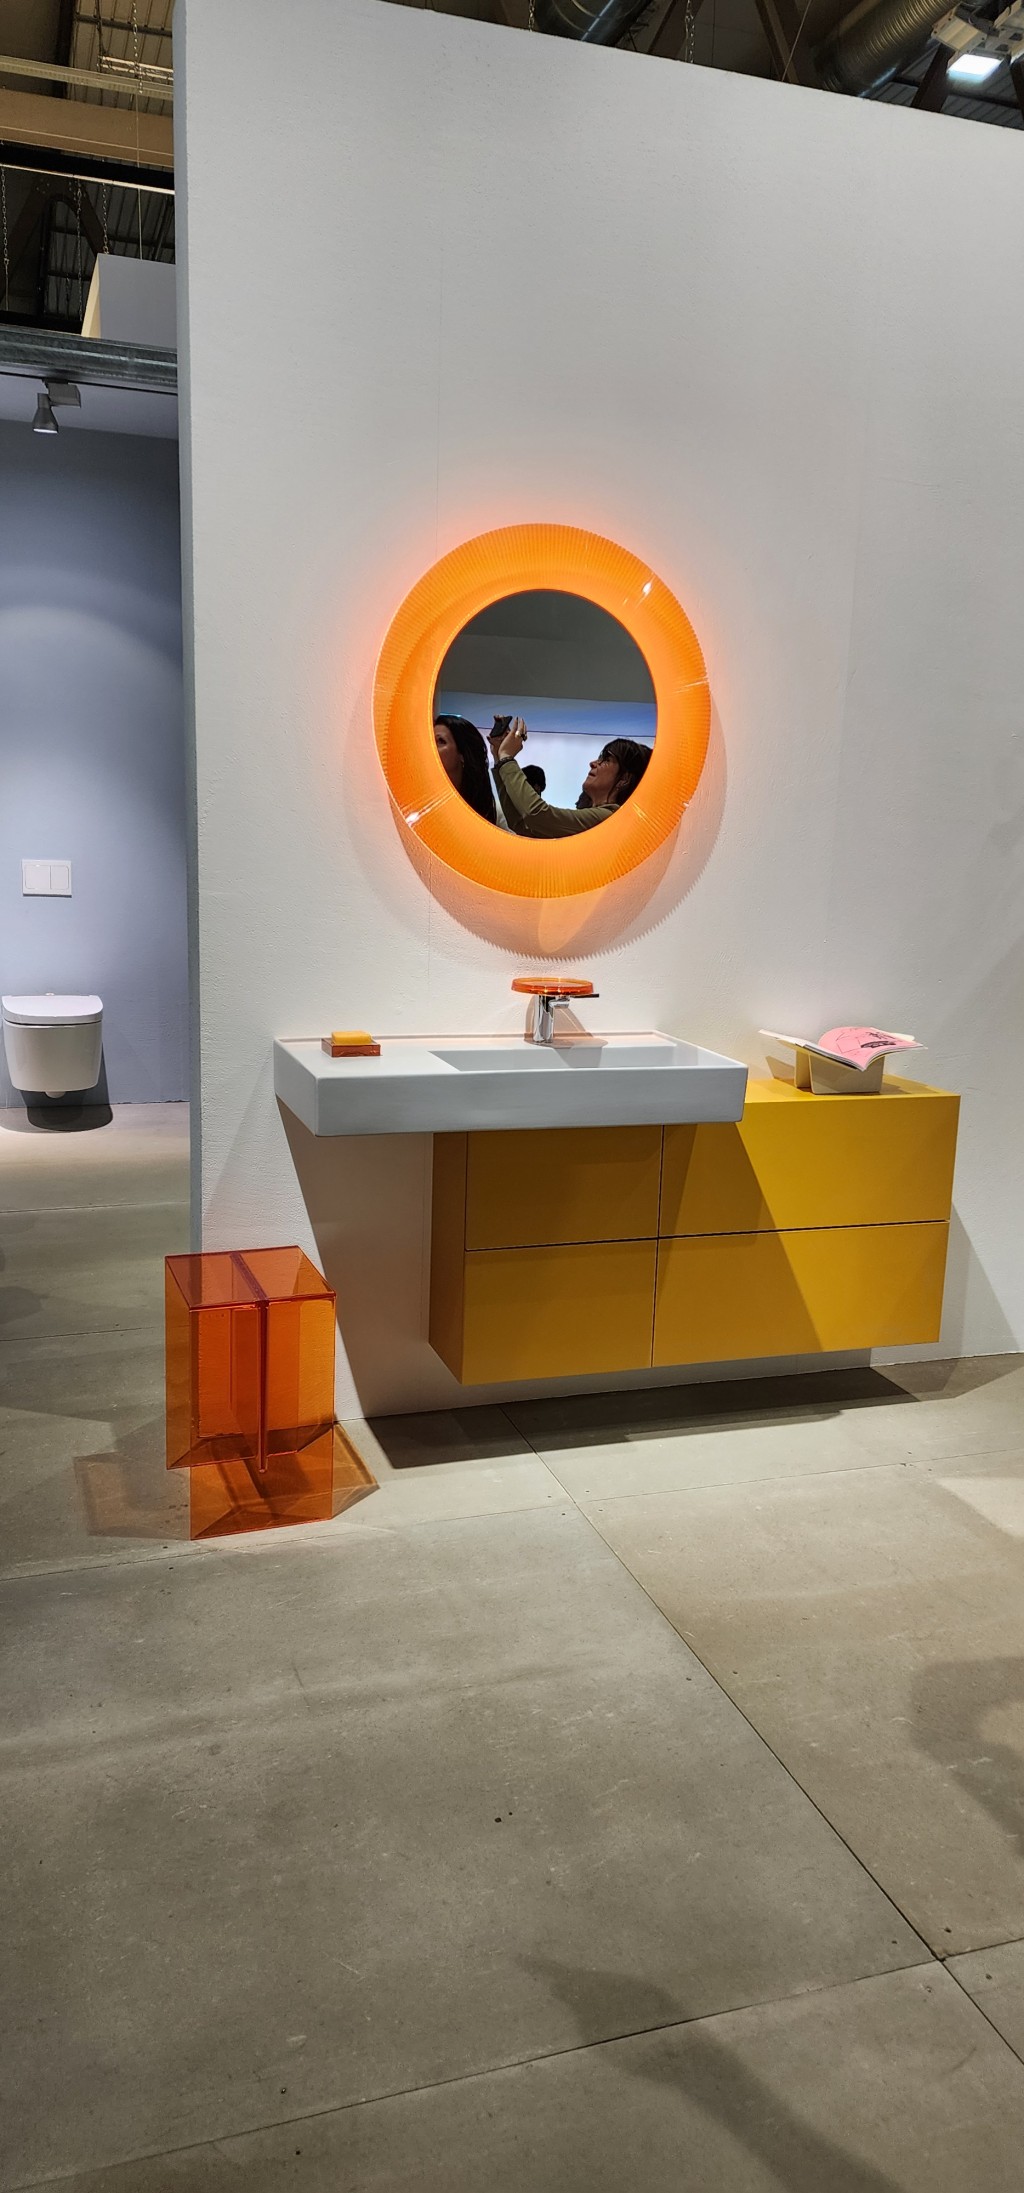 A yellow and orange bathroom display at Salone Internazionale del Mobile di Milano